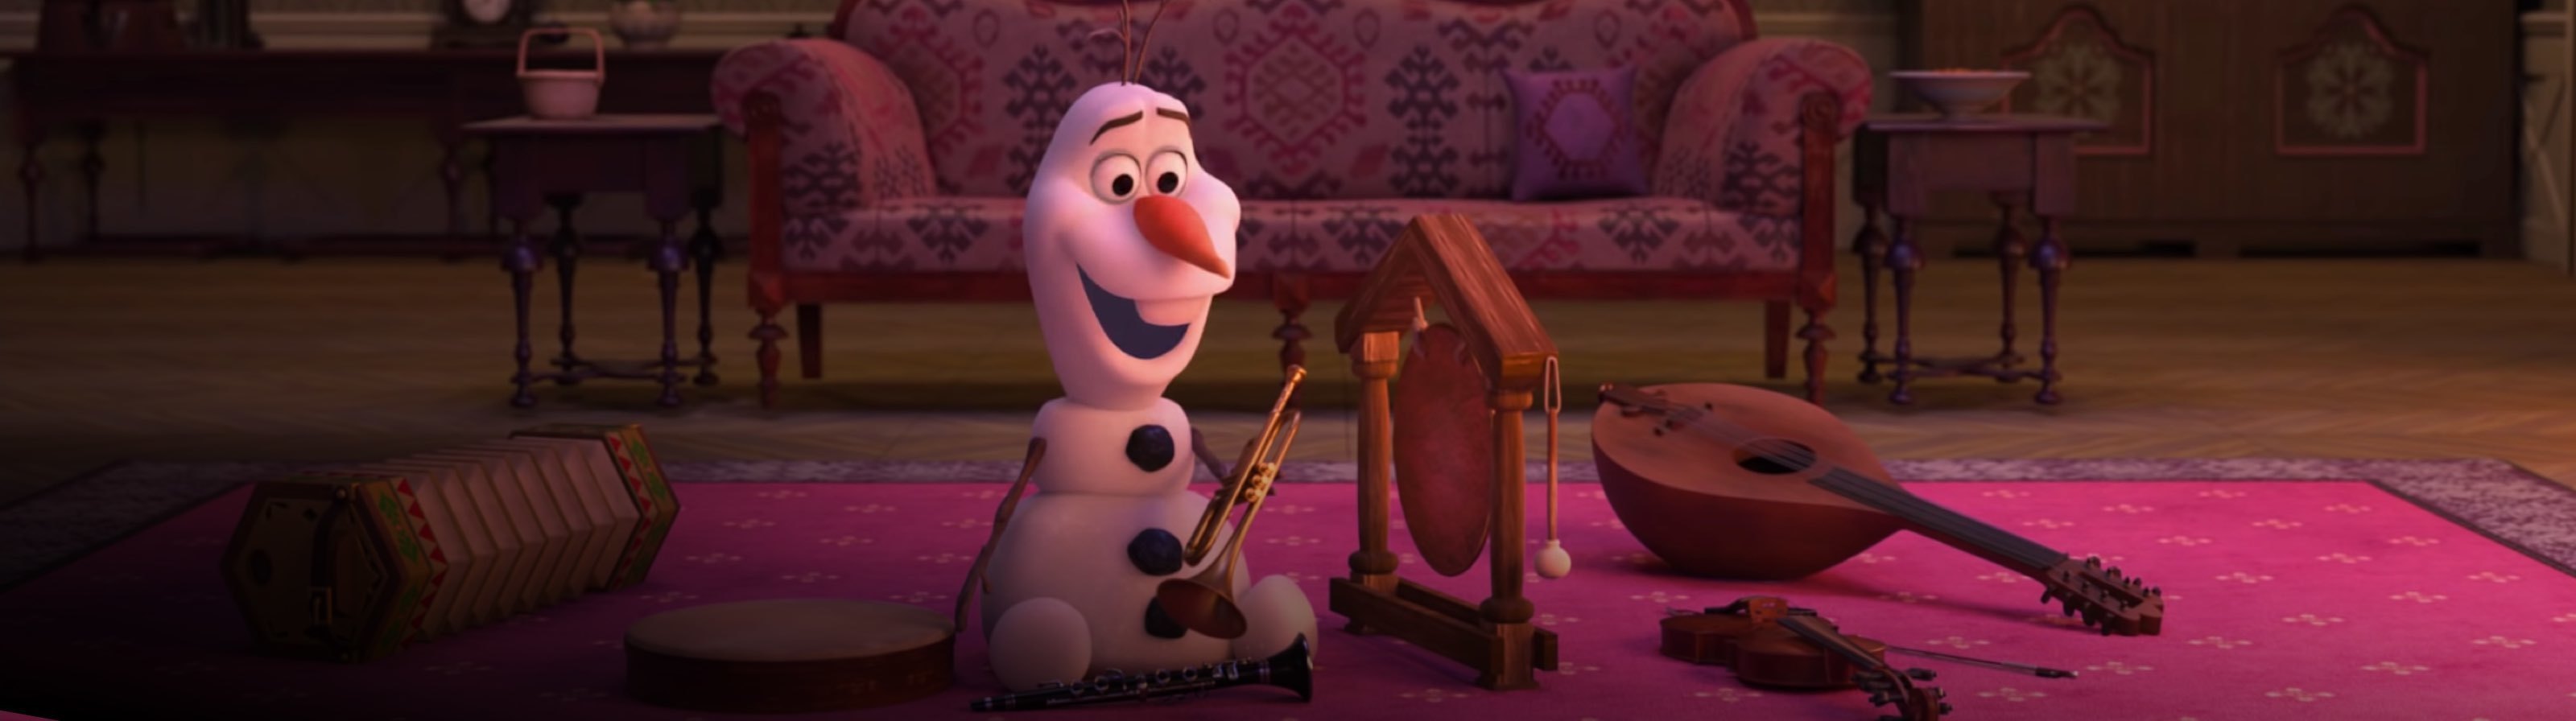 Divertiti a casa con Olaf